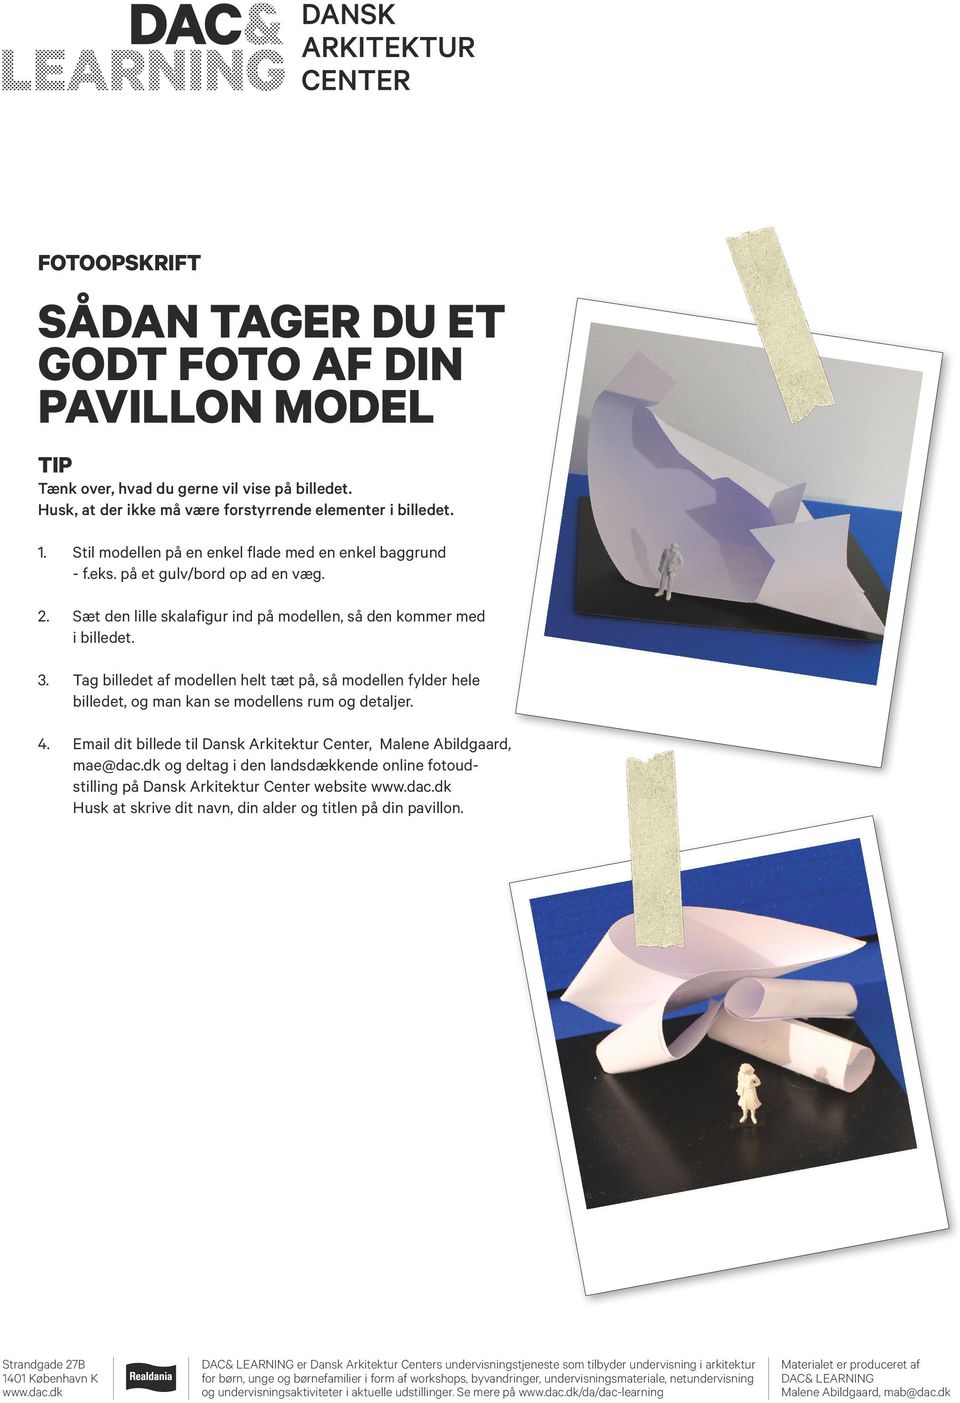 Tag billedet af modellen helt tæt på, så modellen fylder hele billedet, og man kan se modellens rum og detaljer. 4. Email dit billede til Dansk Arkitektur Center, Malene Abildgaard, mae@dac.